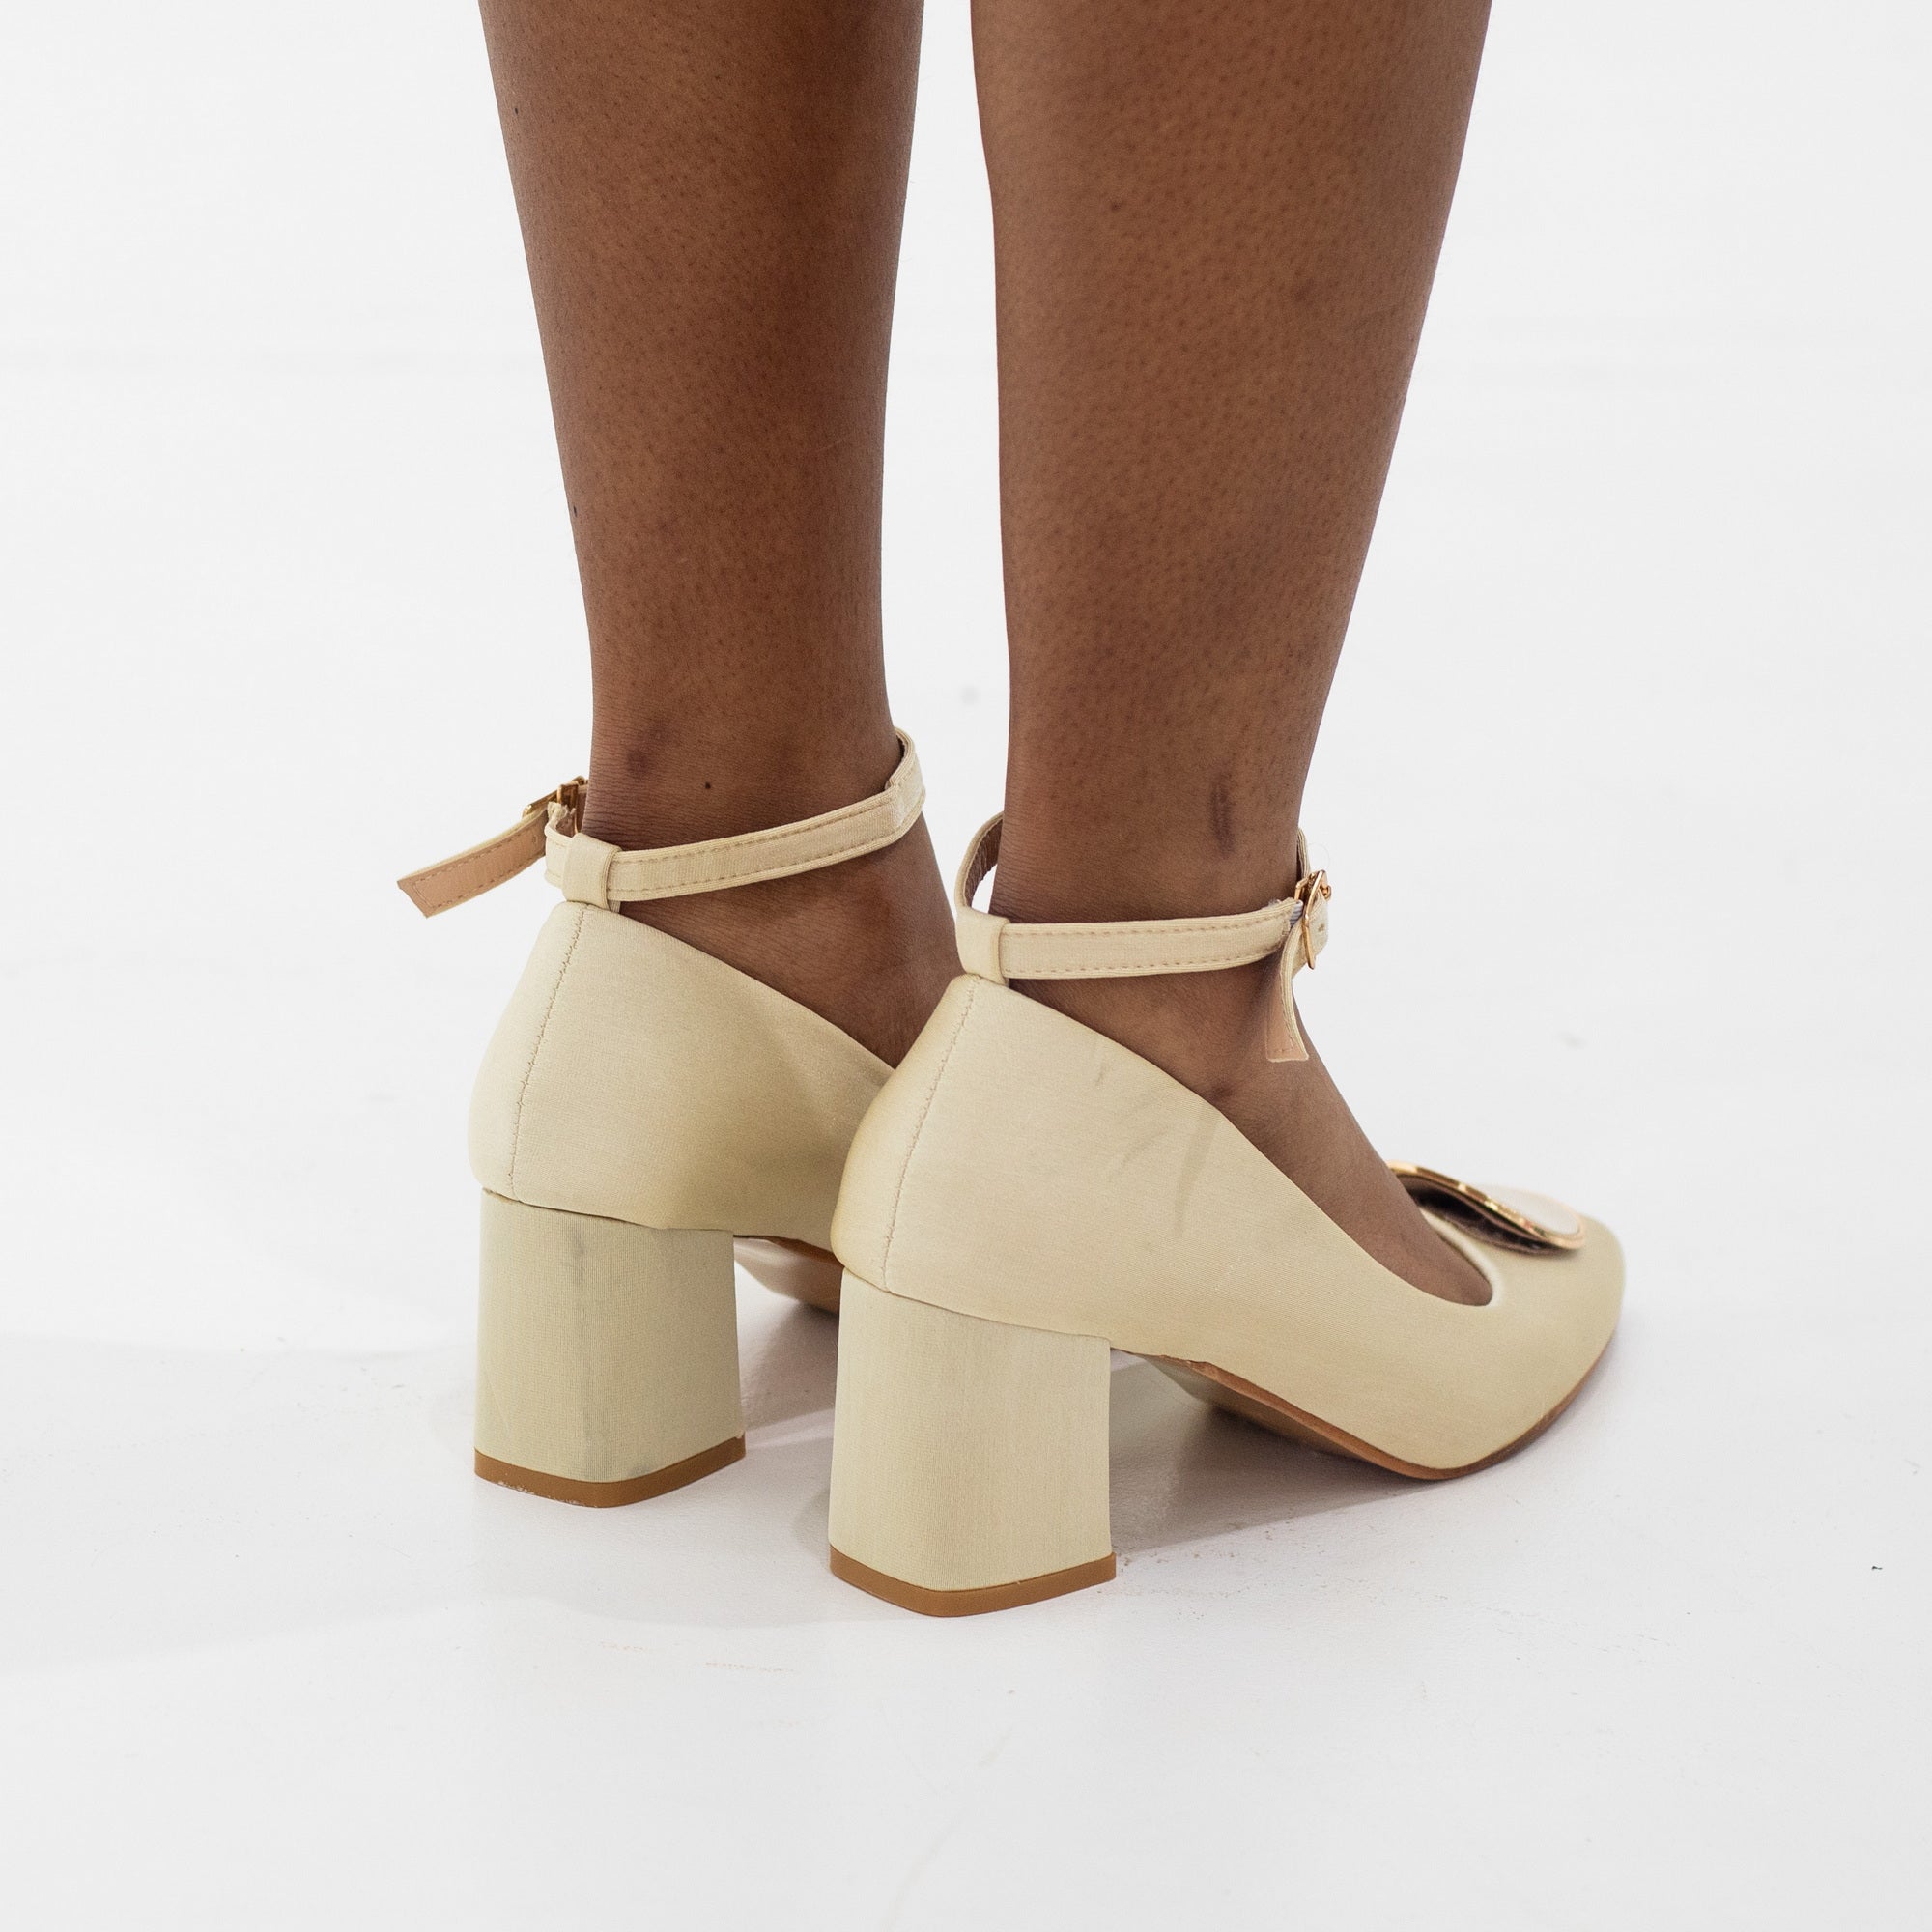 Cream 7.5cm block heel ankle strap court with a round trim trip